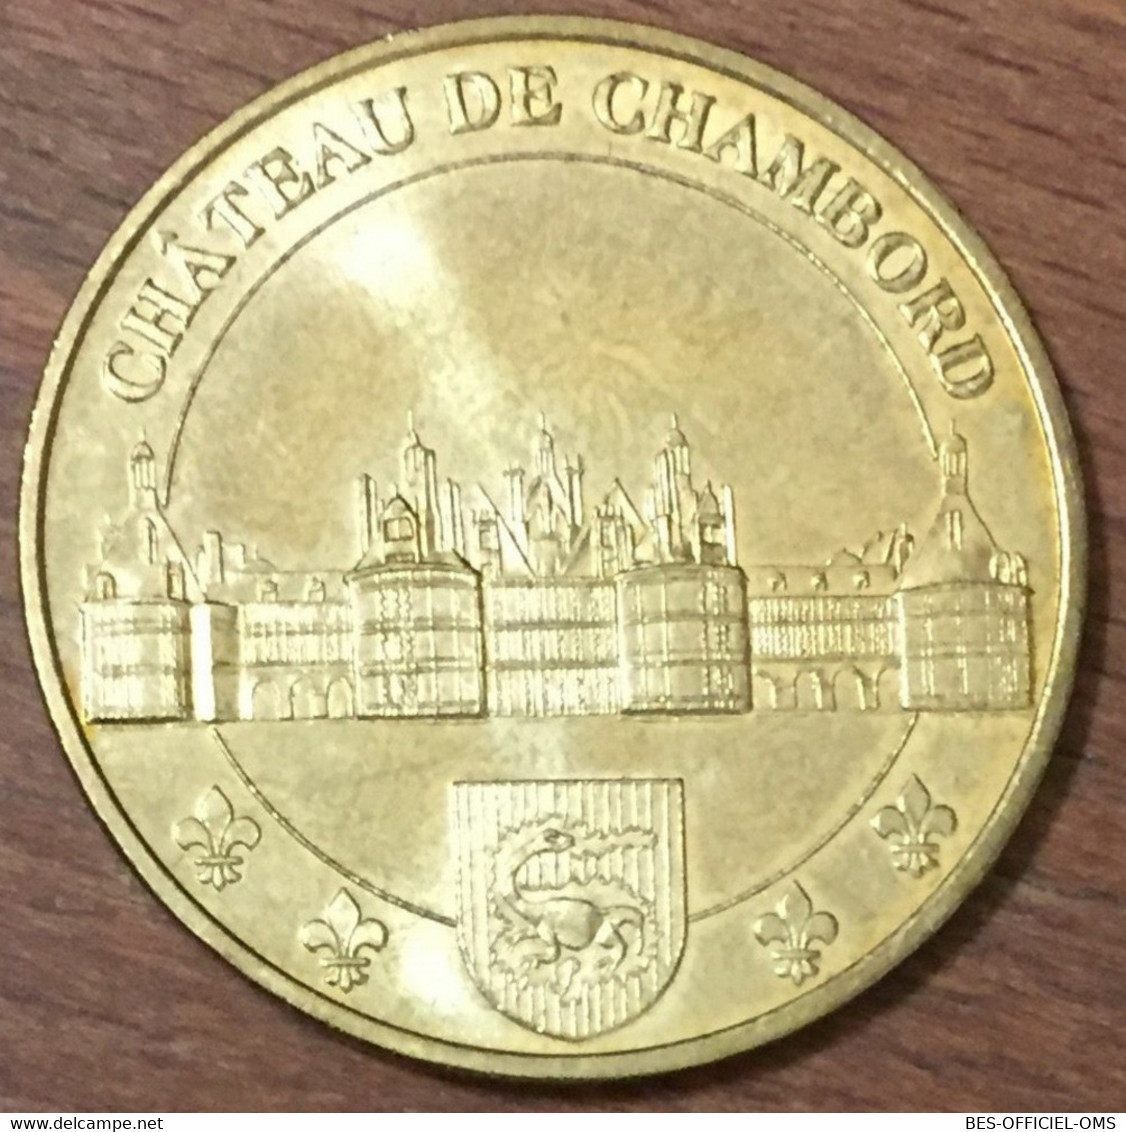 41 CHÂTEAU DE CHAMBORD MDP 2009 MINI MÉDAILLE SOUVENIR MONNAIE DE PARIS JETON TOURISTIQUE MEDALS COINS TOKENS - 2009